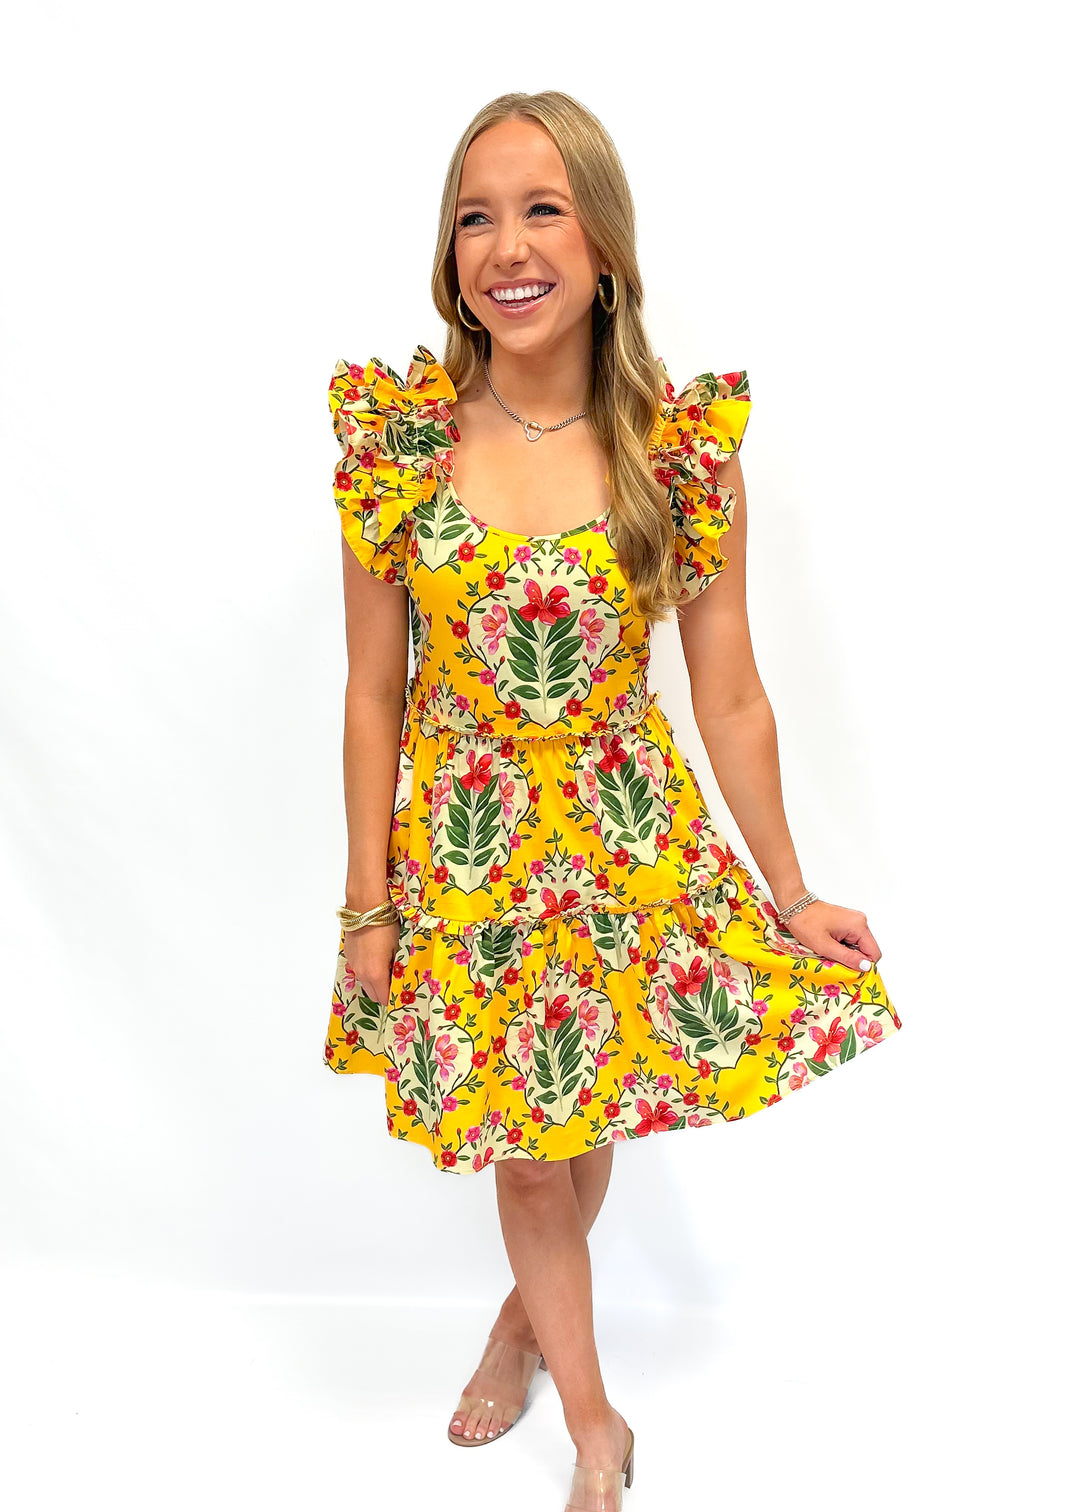 Alden Adair Amora Dress - Yellow Bouquet - Gabrielle's Biloxi